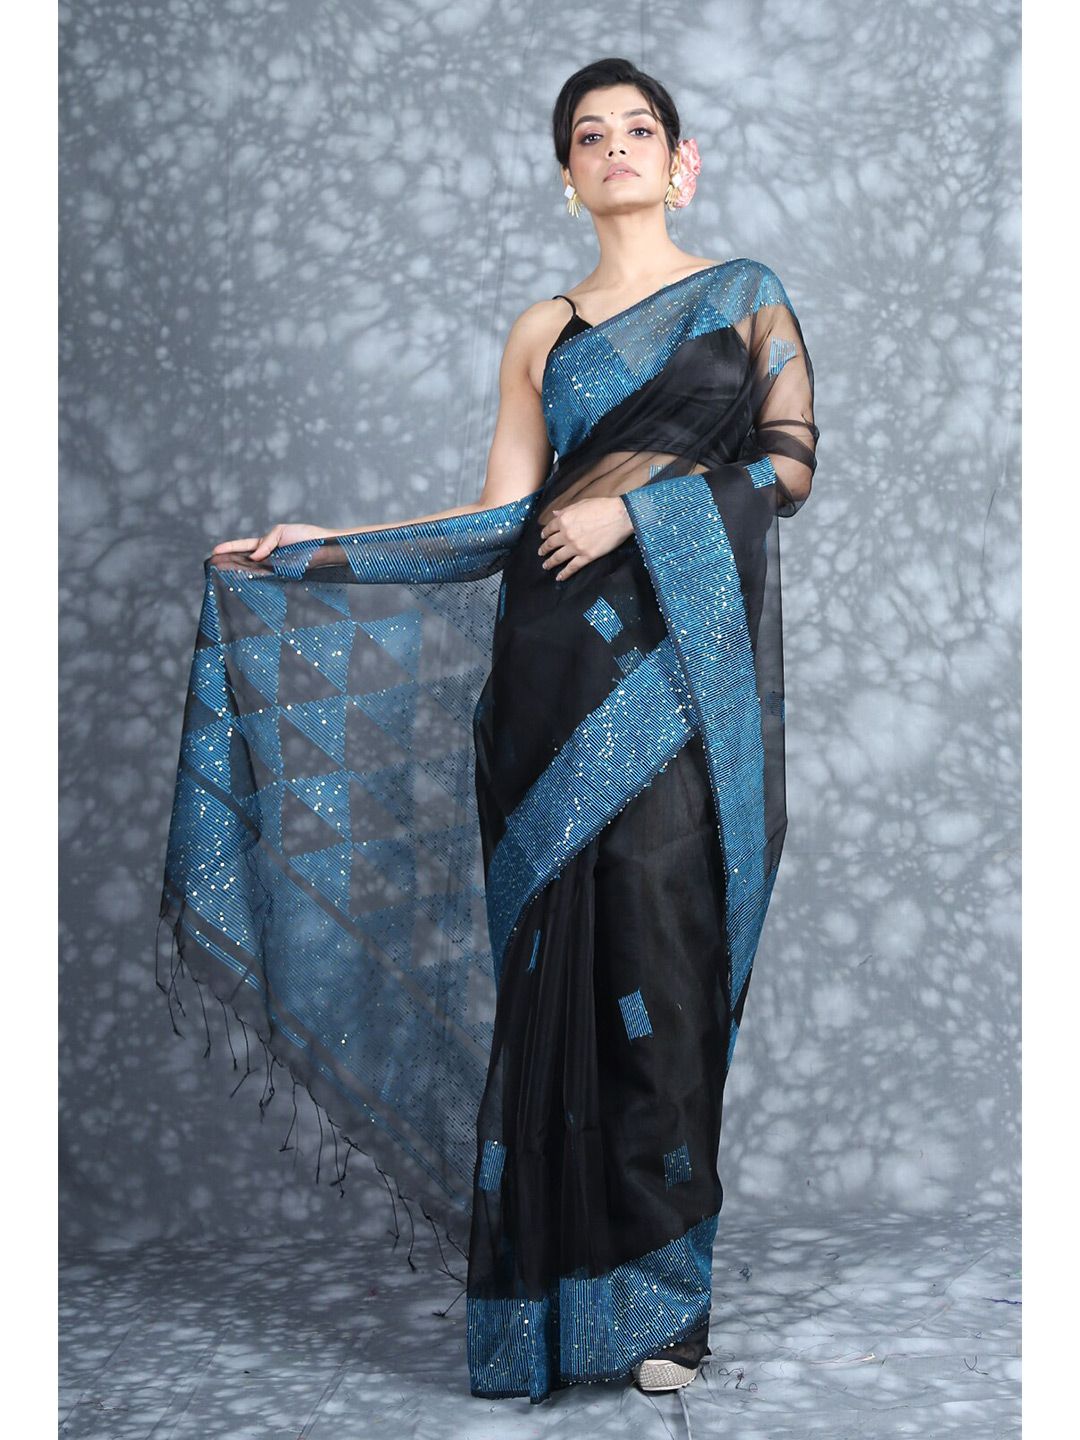 Charukriti Black & Blue Woven Design Pure Silk Saree Price in India